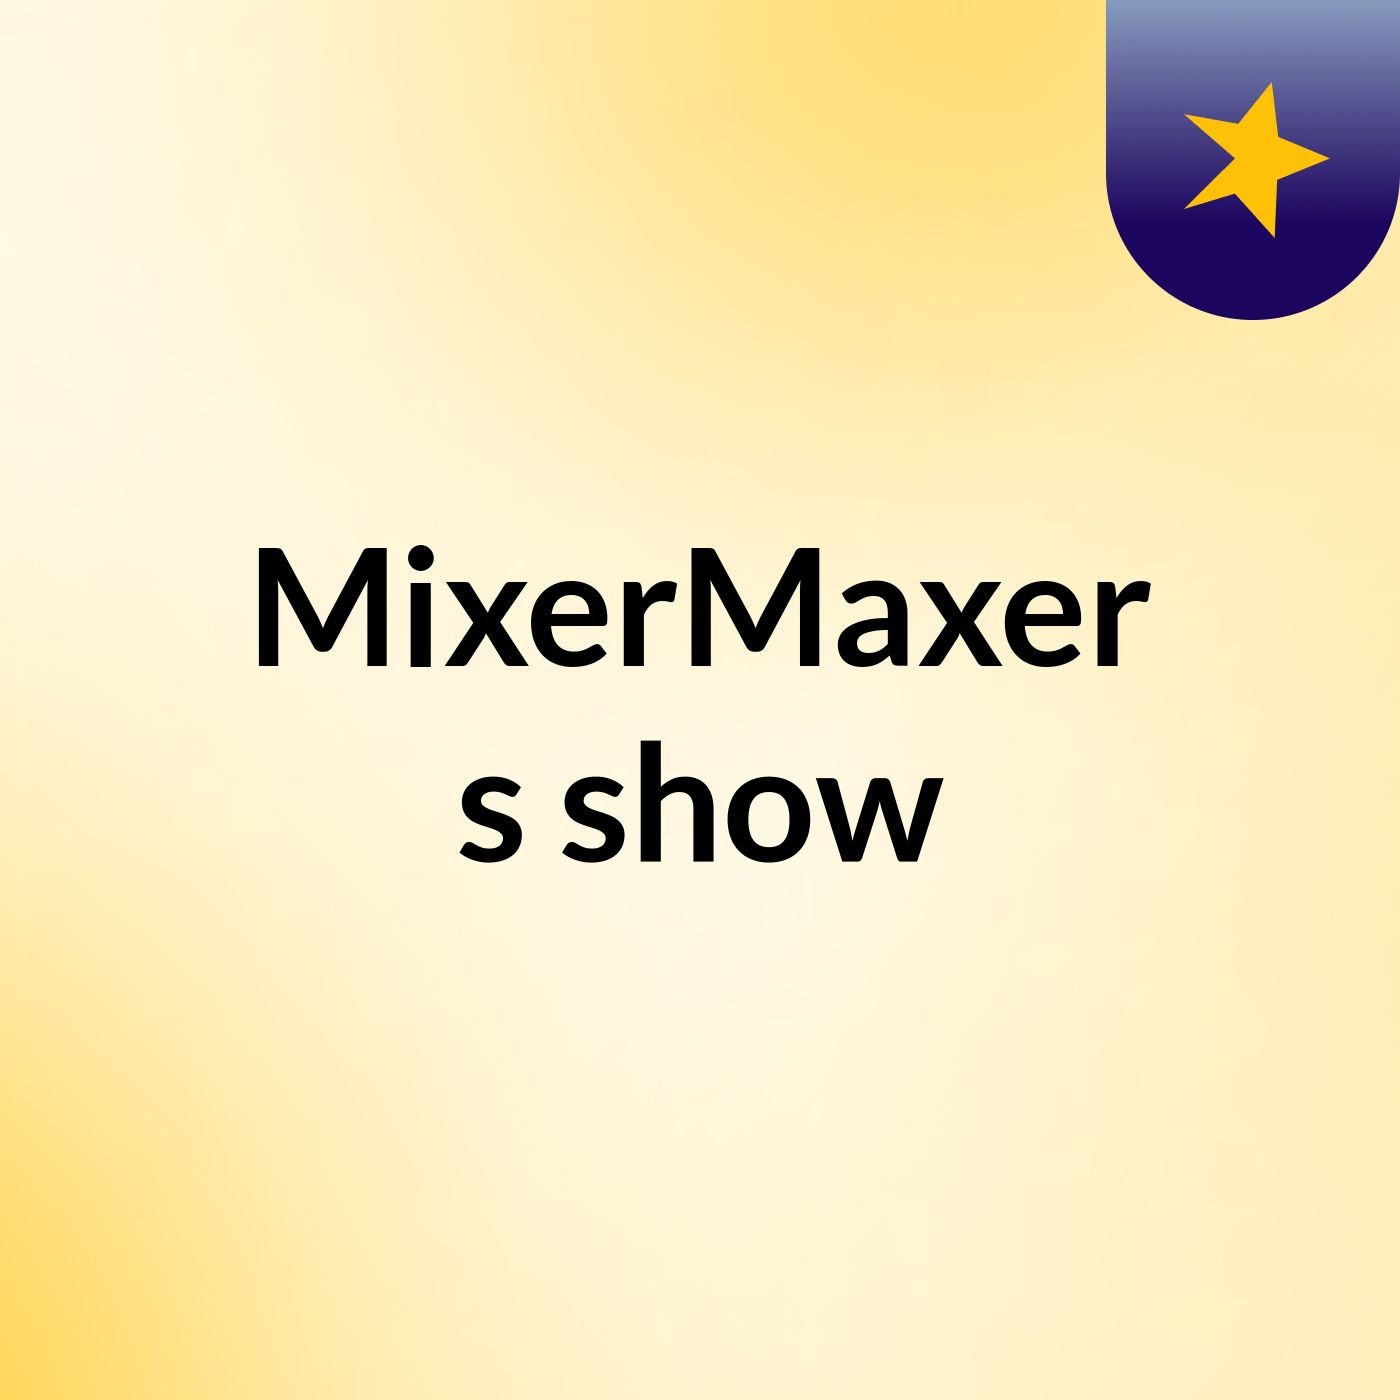 MixerMaxer's show